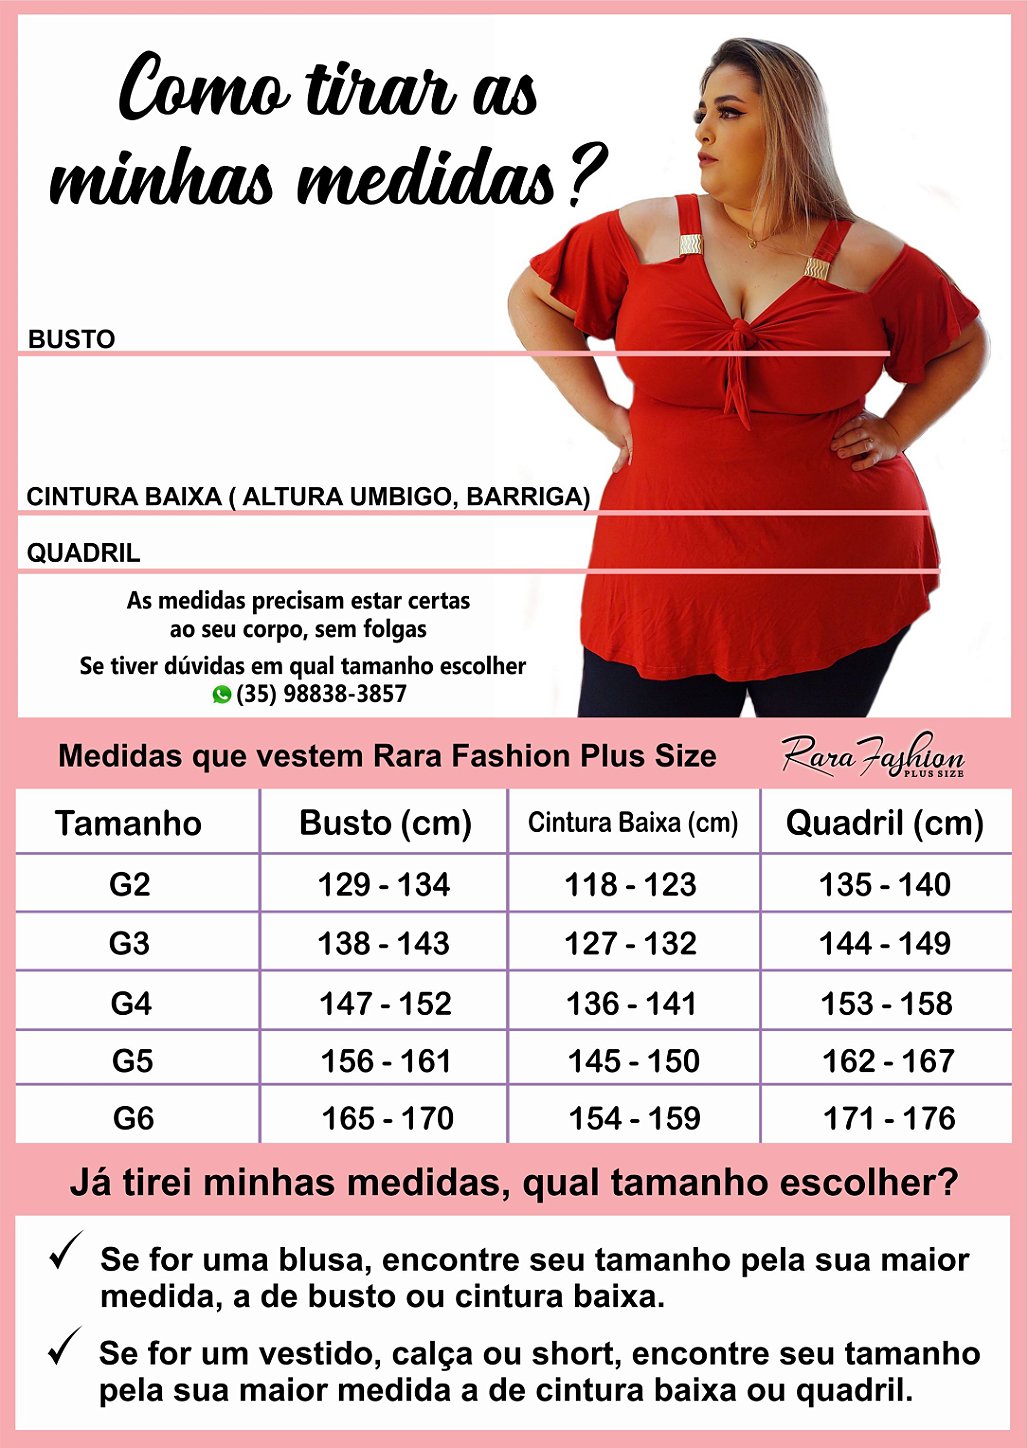 Tabela de Medidas - Moda Feminina Plus Size do G3 ao G6 e Sob Medidas